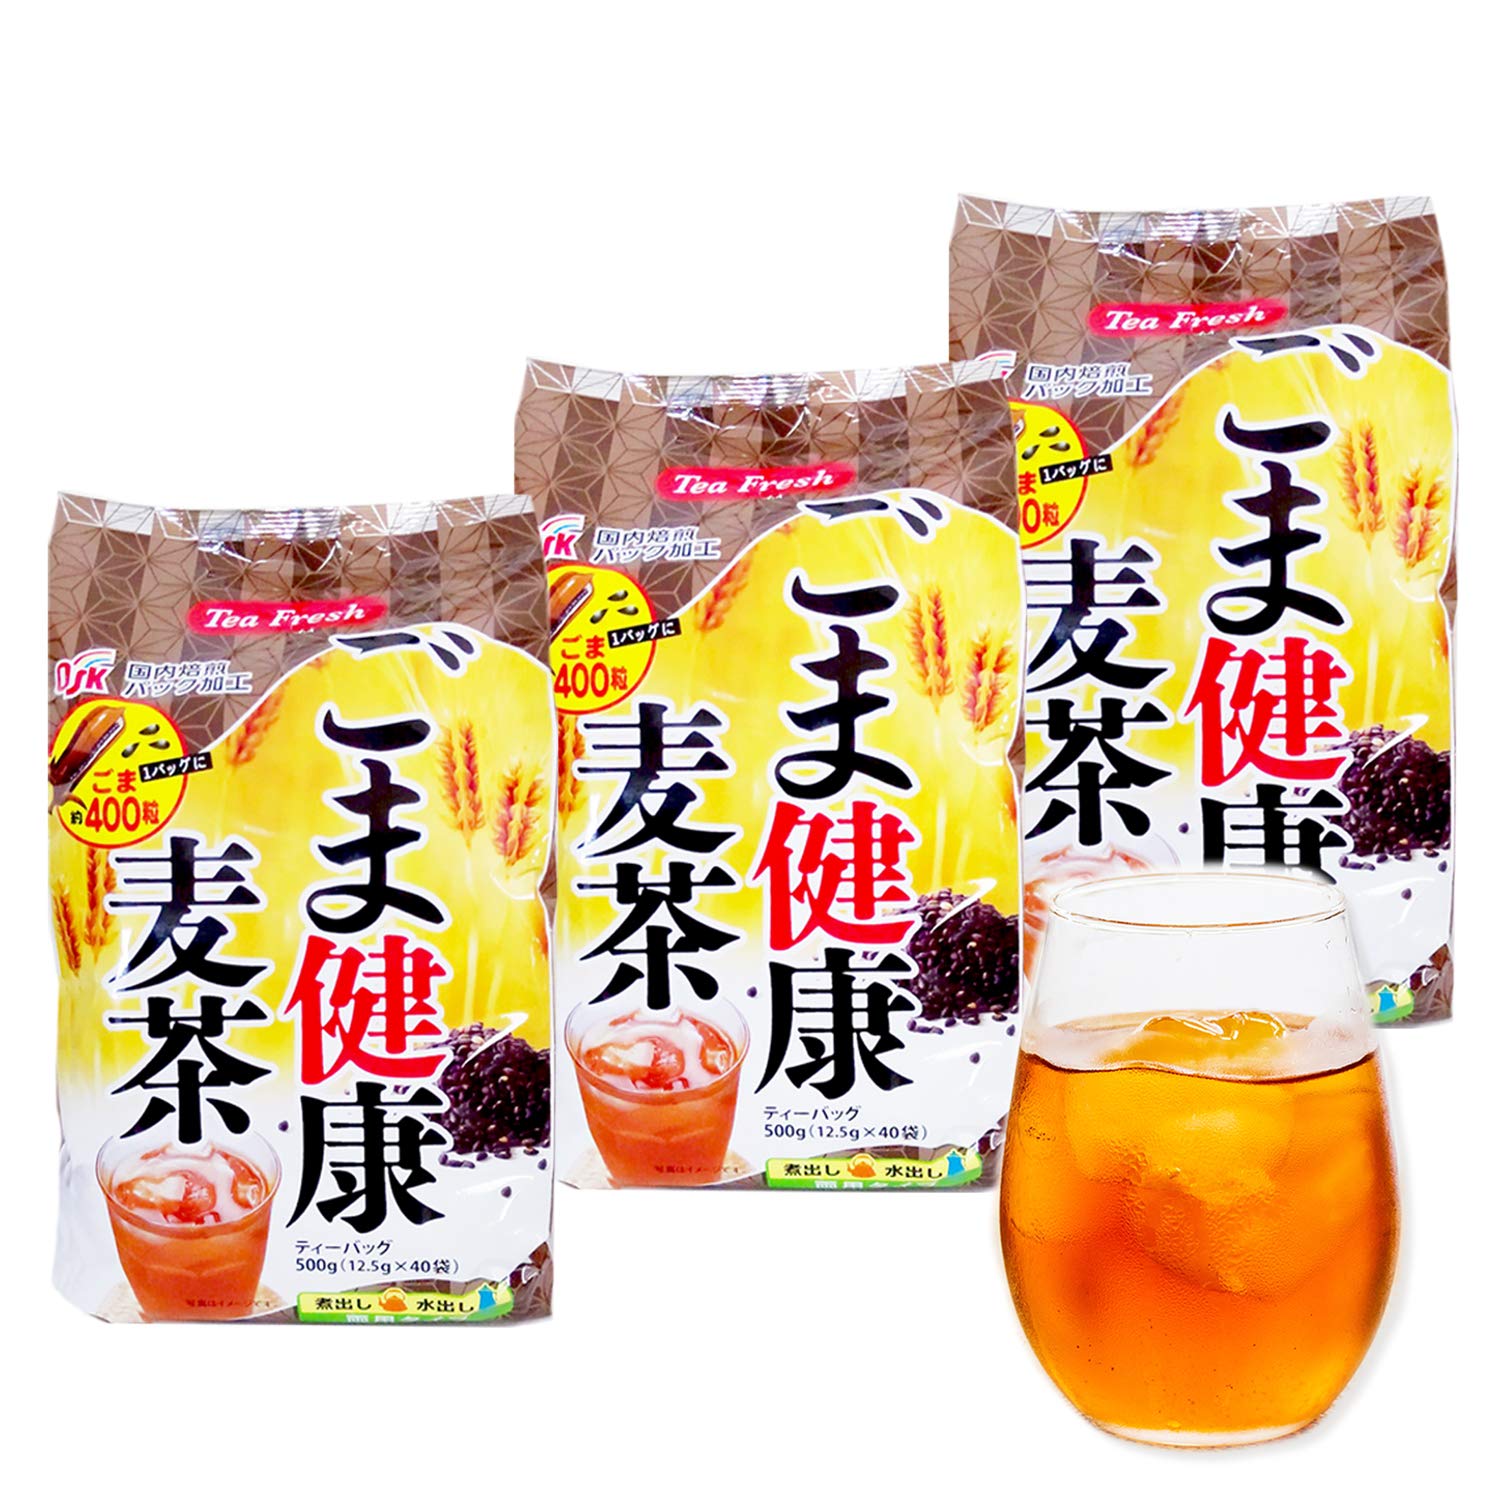 ごま健康麦茶 ゴマ麦茶 ごま麦茶 胡麻麦茶 健康茶 黒胡麻 麦茶 ティーバッグ 川本屋茶舗 (40P×3袋(120P))